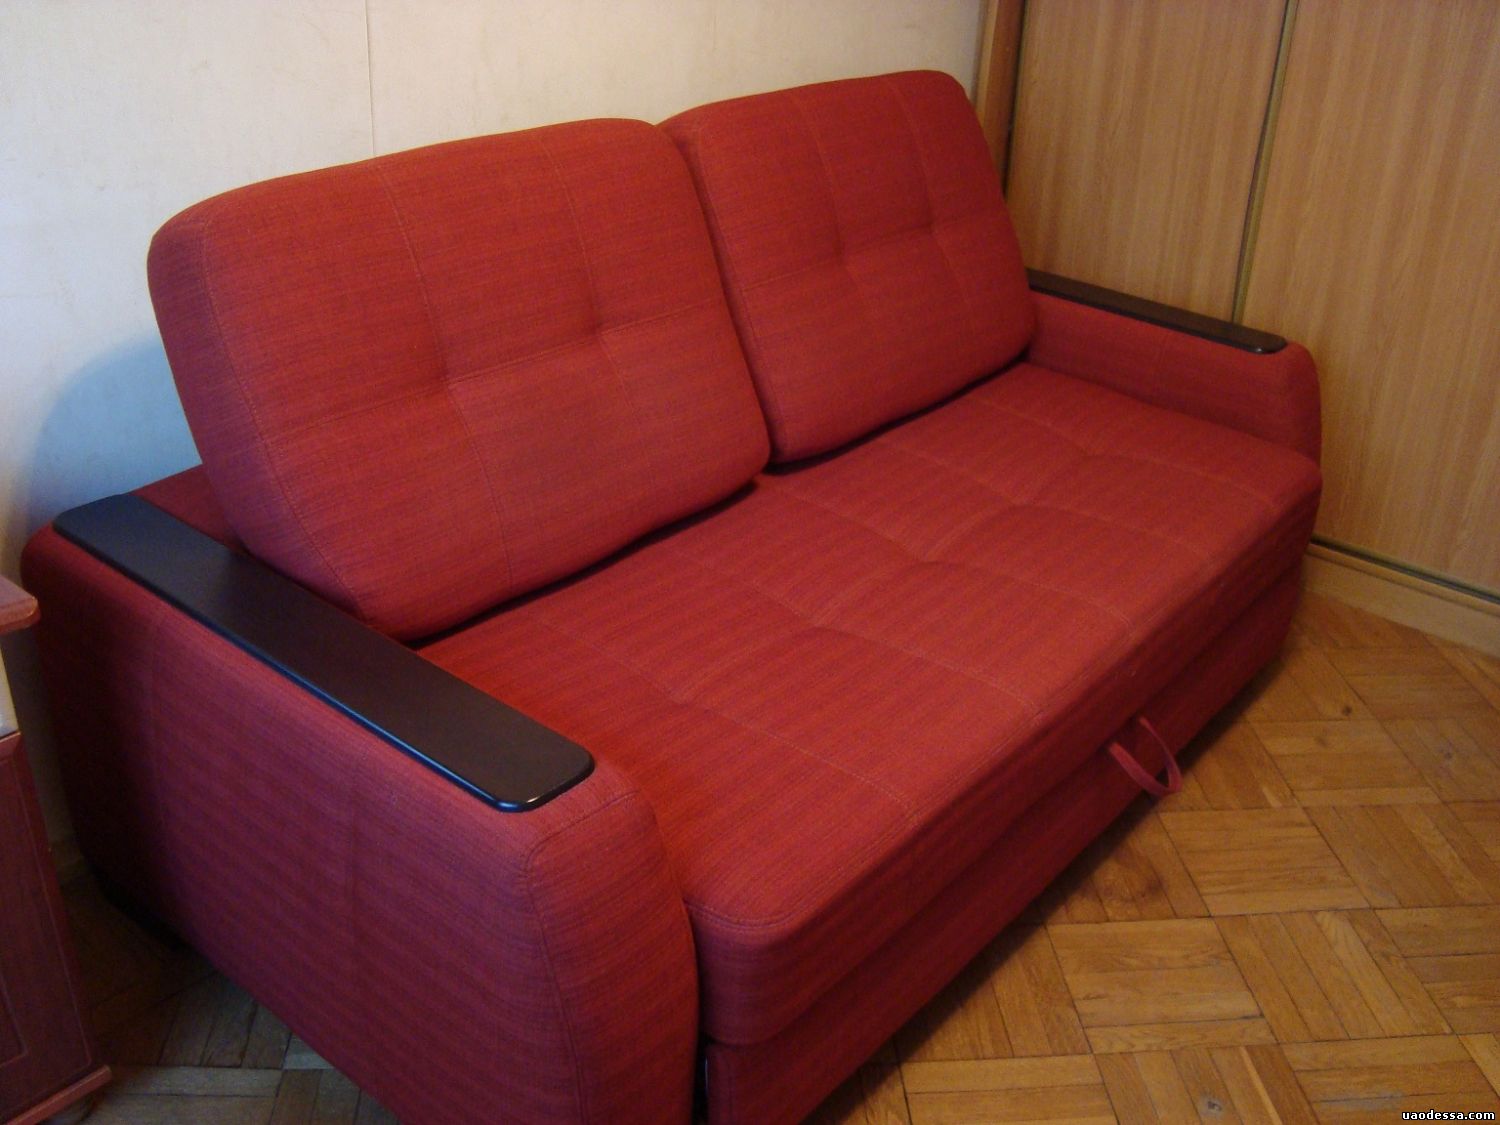 Куплю диван б у новосибирск. Дешевые диваны. Диван б/у. Бэушный диван. Самый дешевый диван.